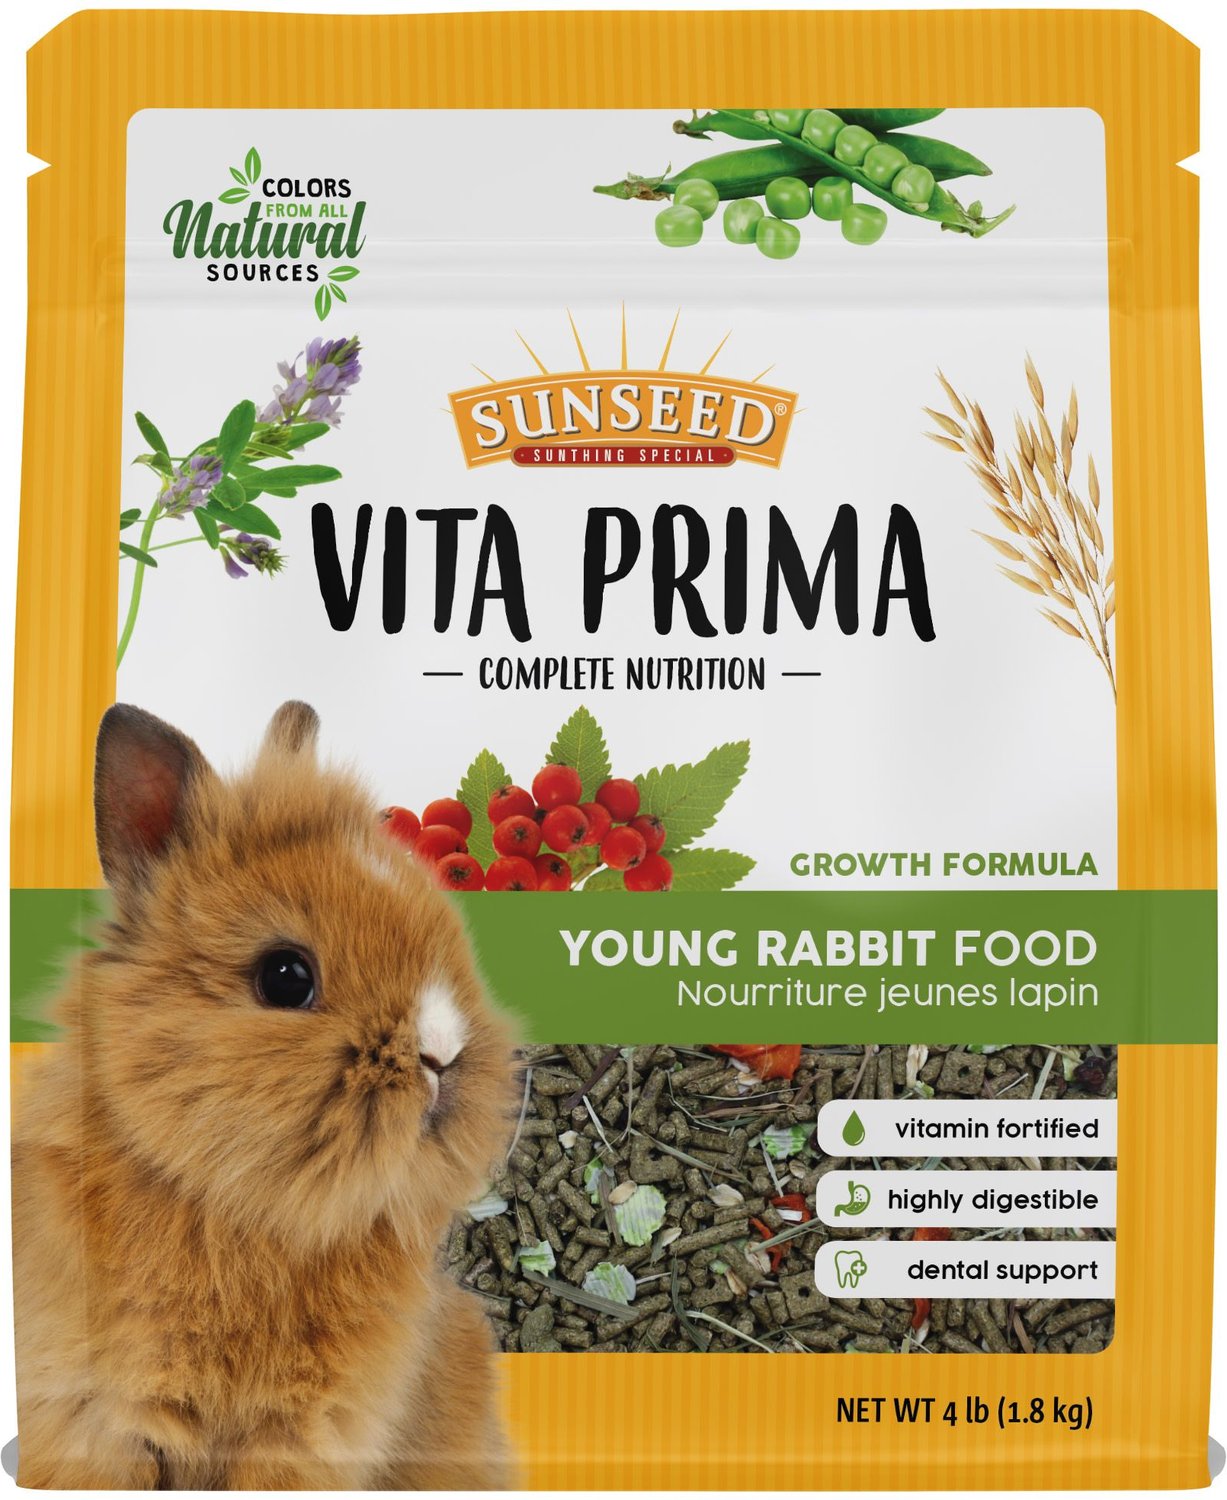 SUNSEED Vita Prima Young Rabbit Food, 4lb bag